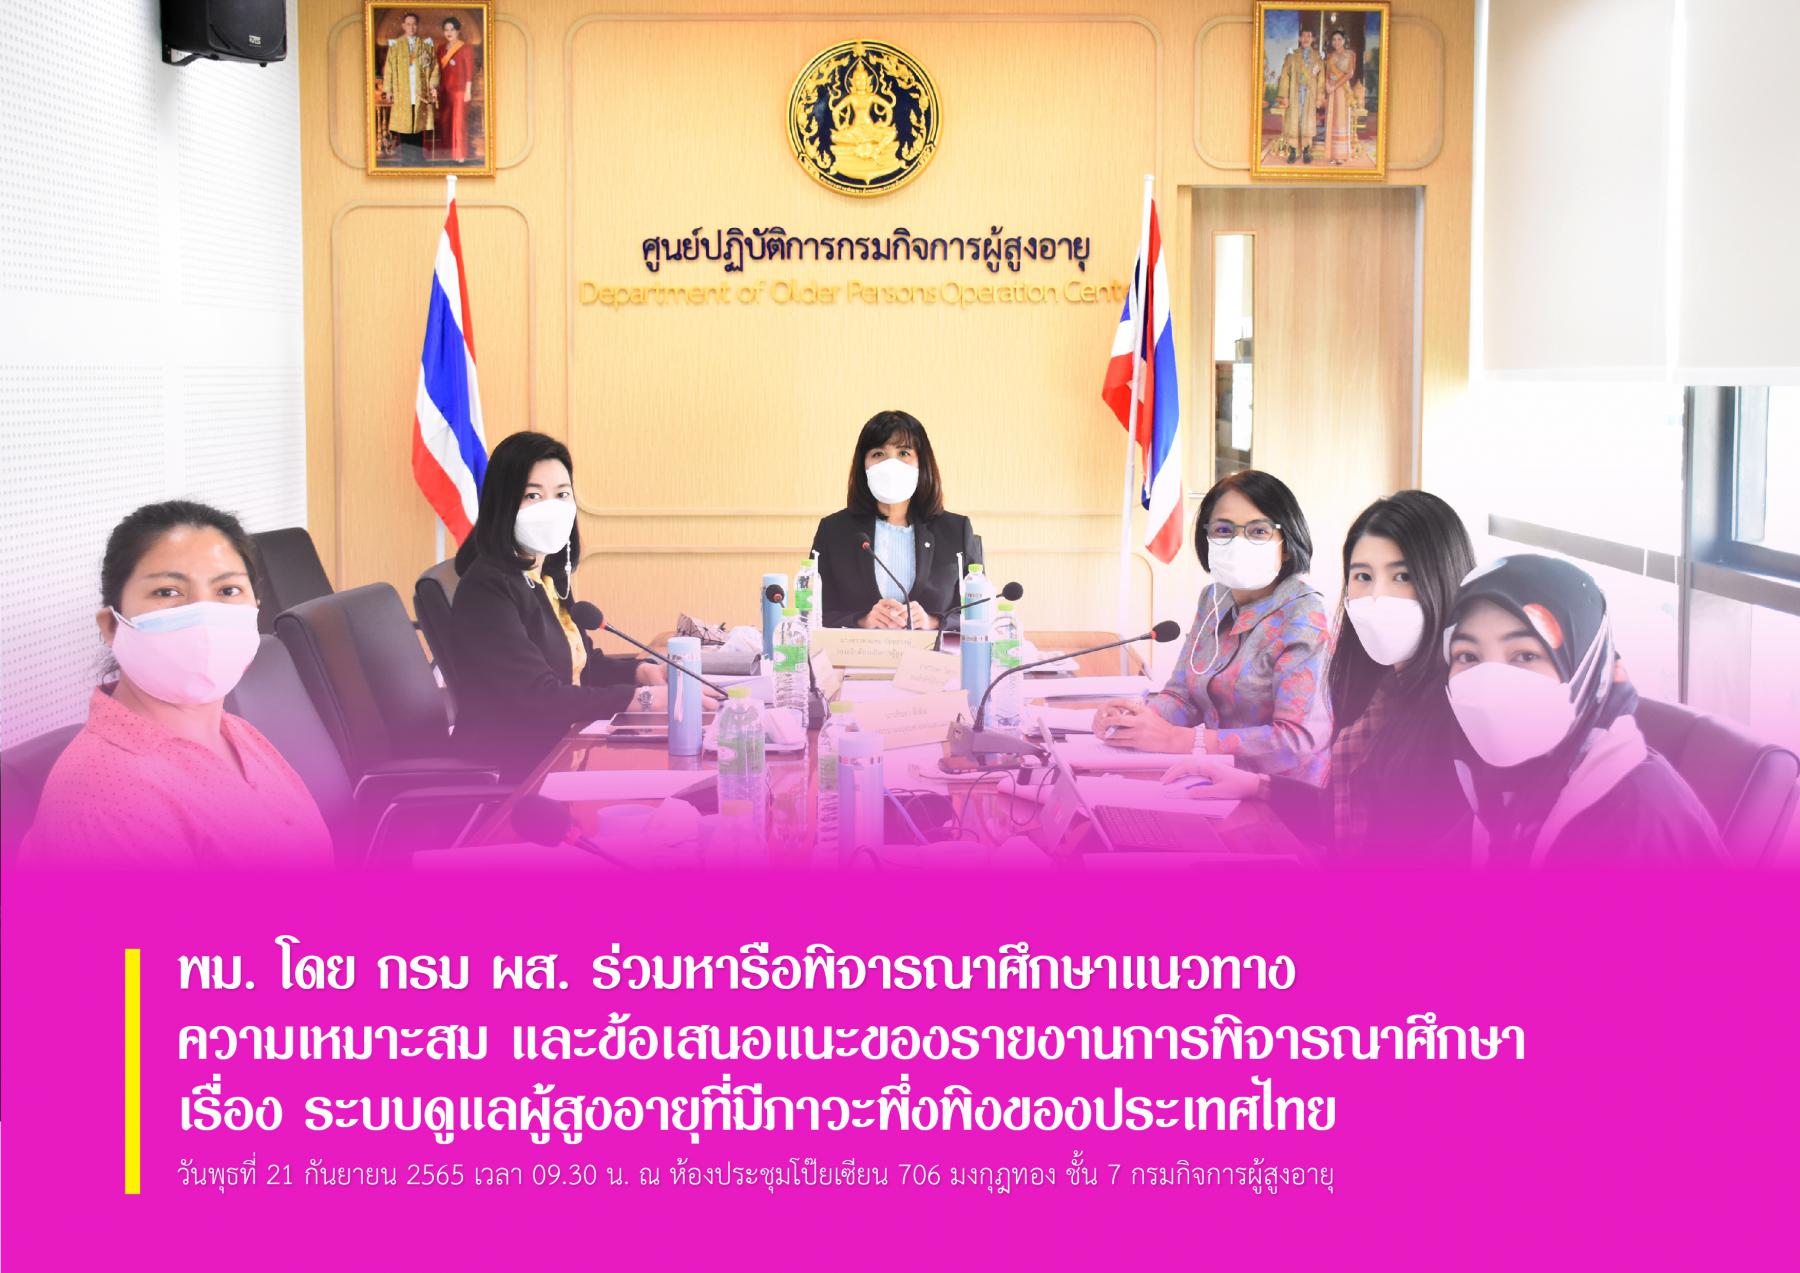 พม. โดย กรม ผส. ร่วมหารือพิจารณาศึกษาแนวทาง ความเหมาะสม และข้อเสนอแนะของรายงานการพิจารณาศึกษา เรื่อง ระบบดูแลผู้สูงอายุที่มีภาวะพึ่งพิงของประเทศไทย